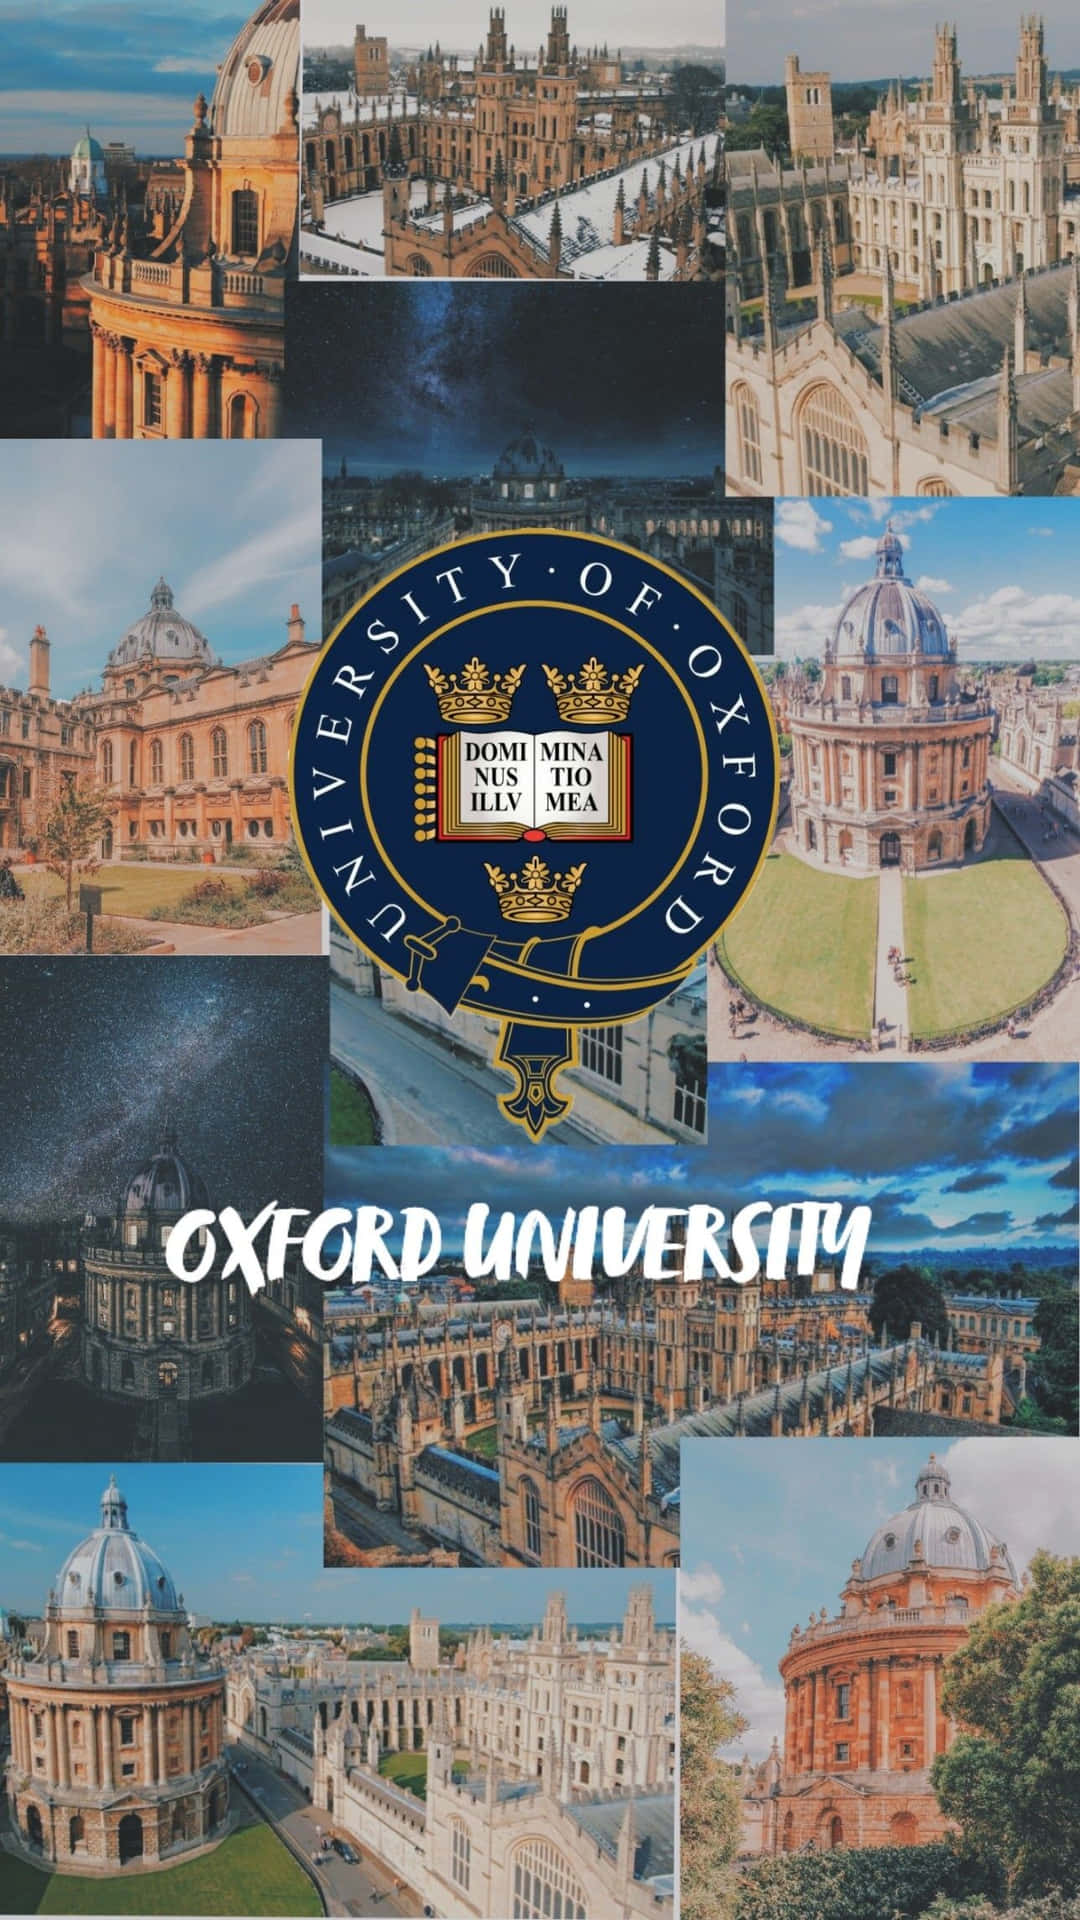 Prestigious Oxford University's Historical Architecture Wallpaper